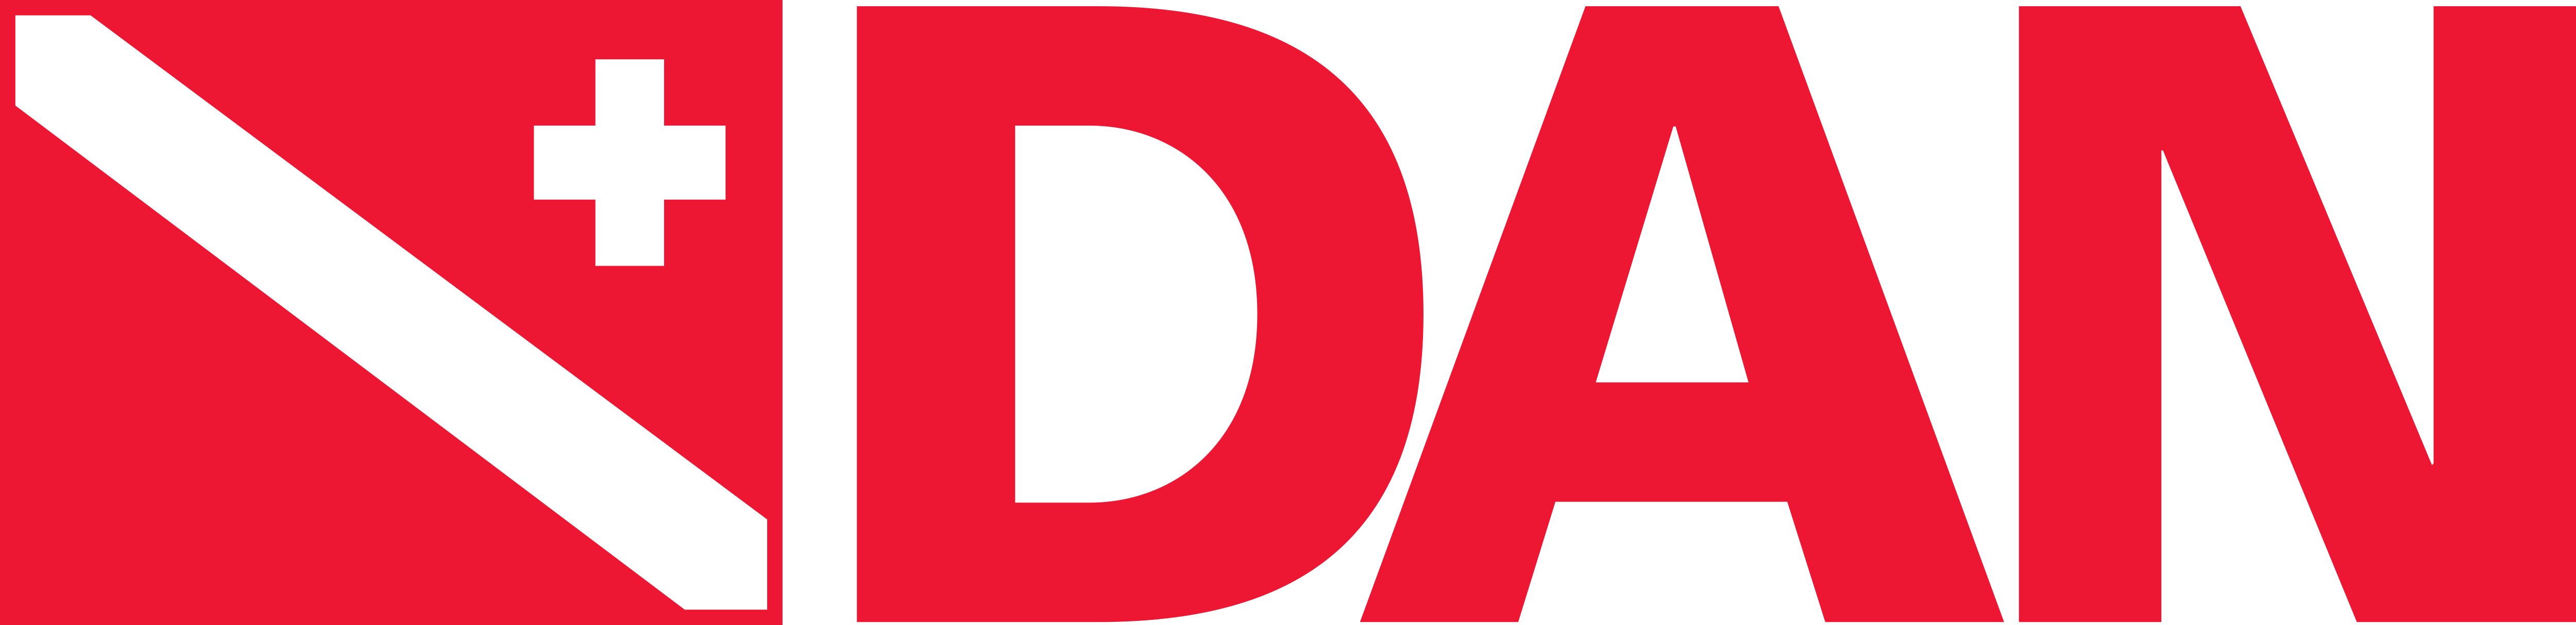  diver alert network logo